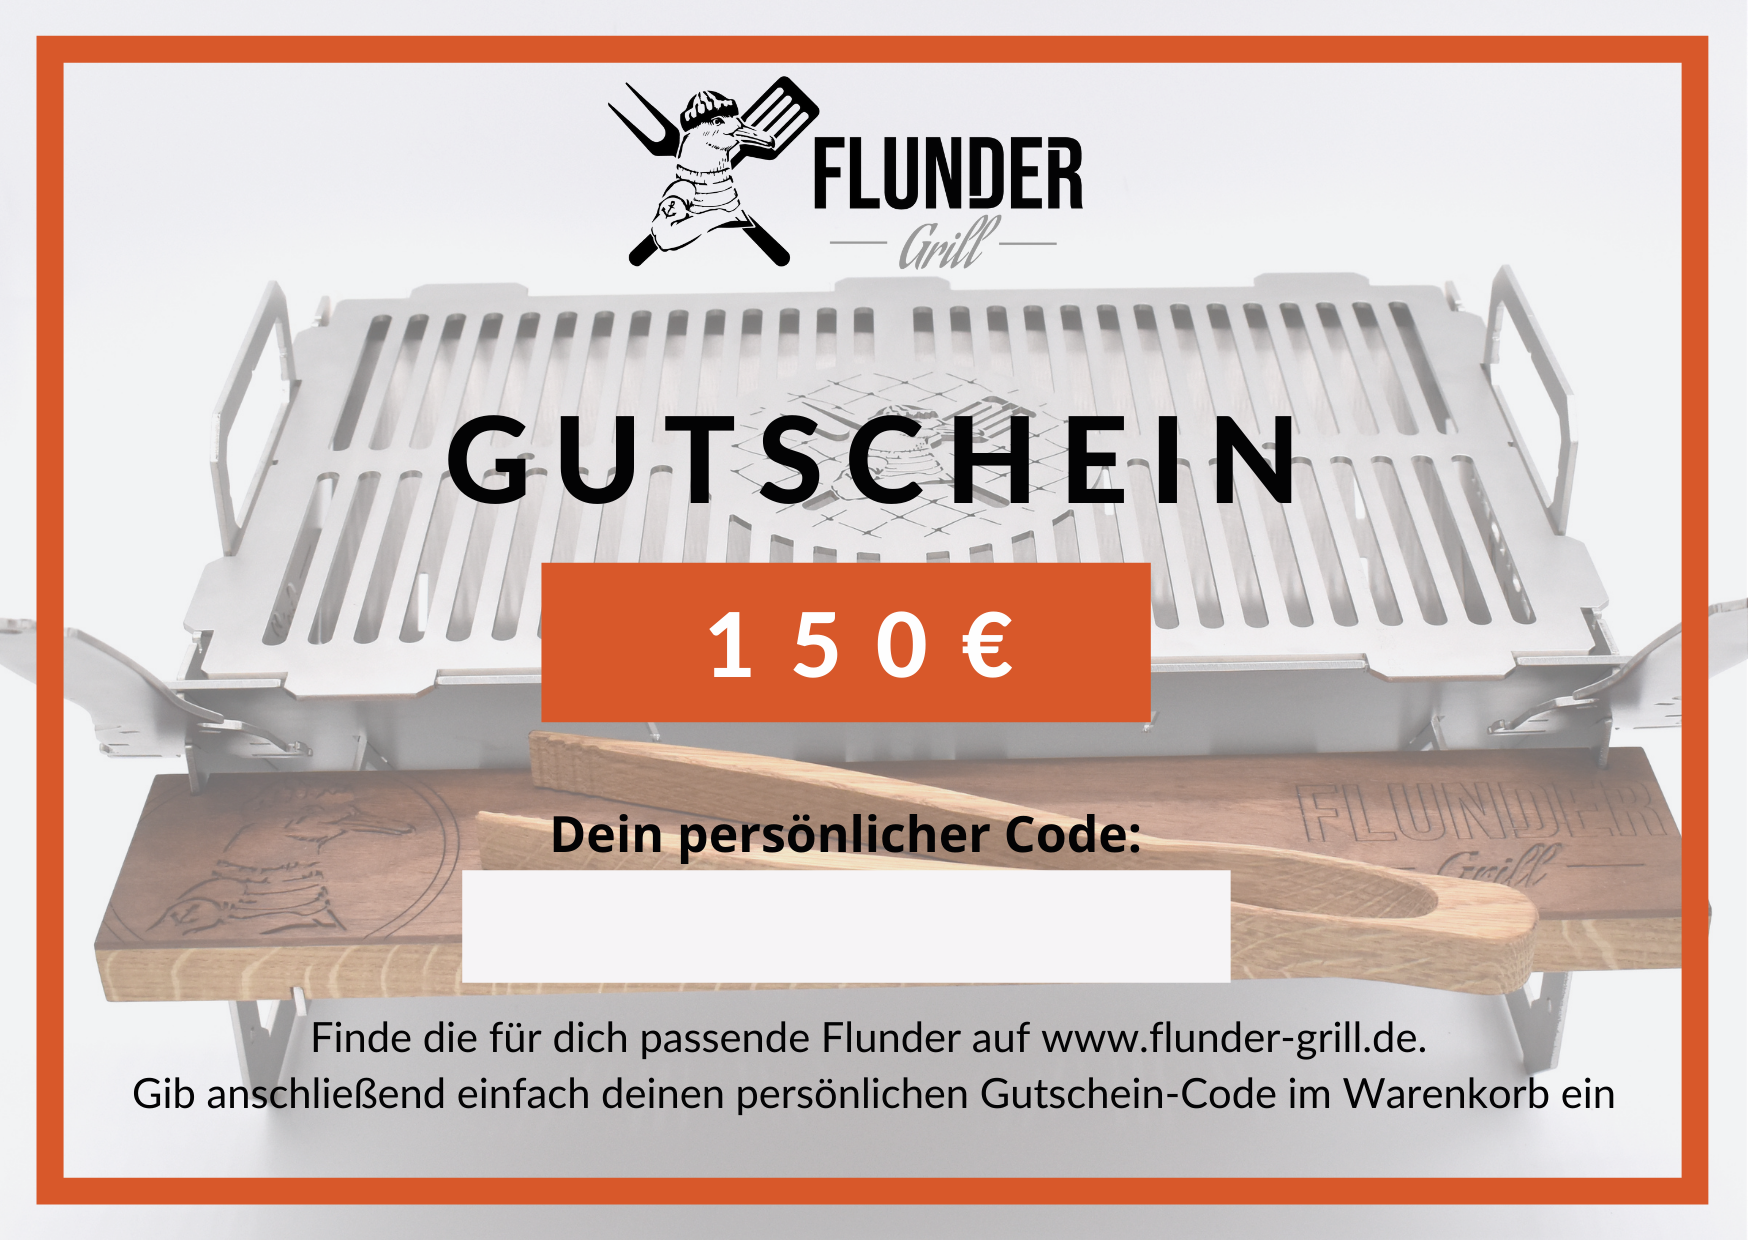 Flunder-Grill Geschenkgutschein 150 Euro